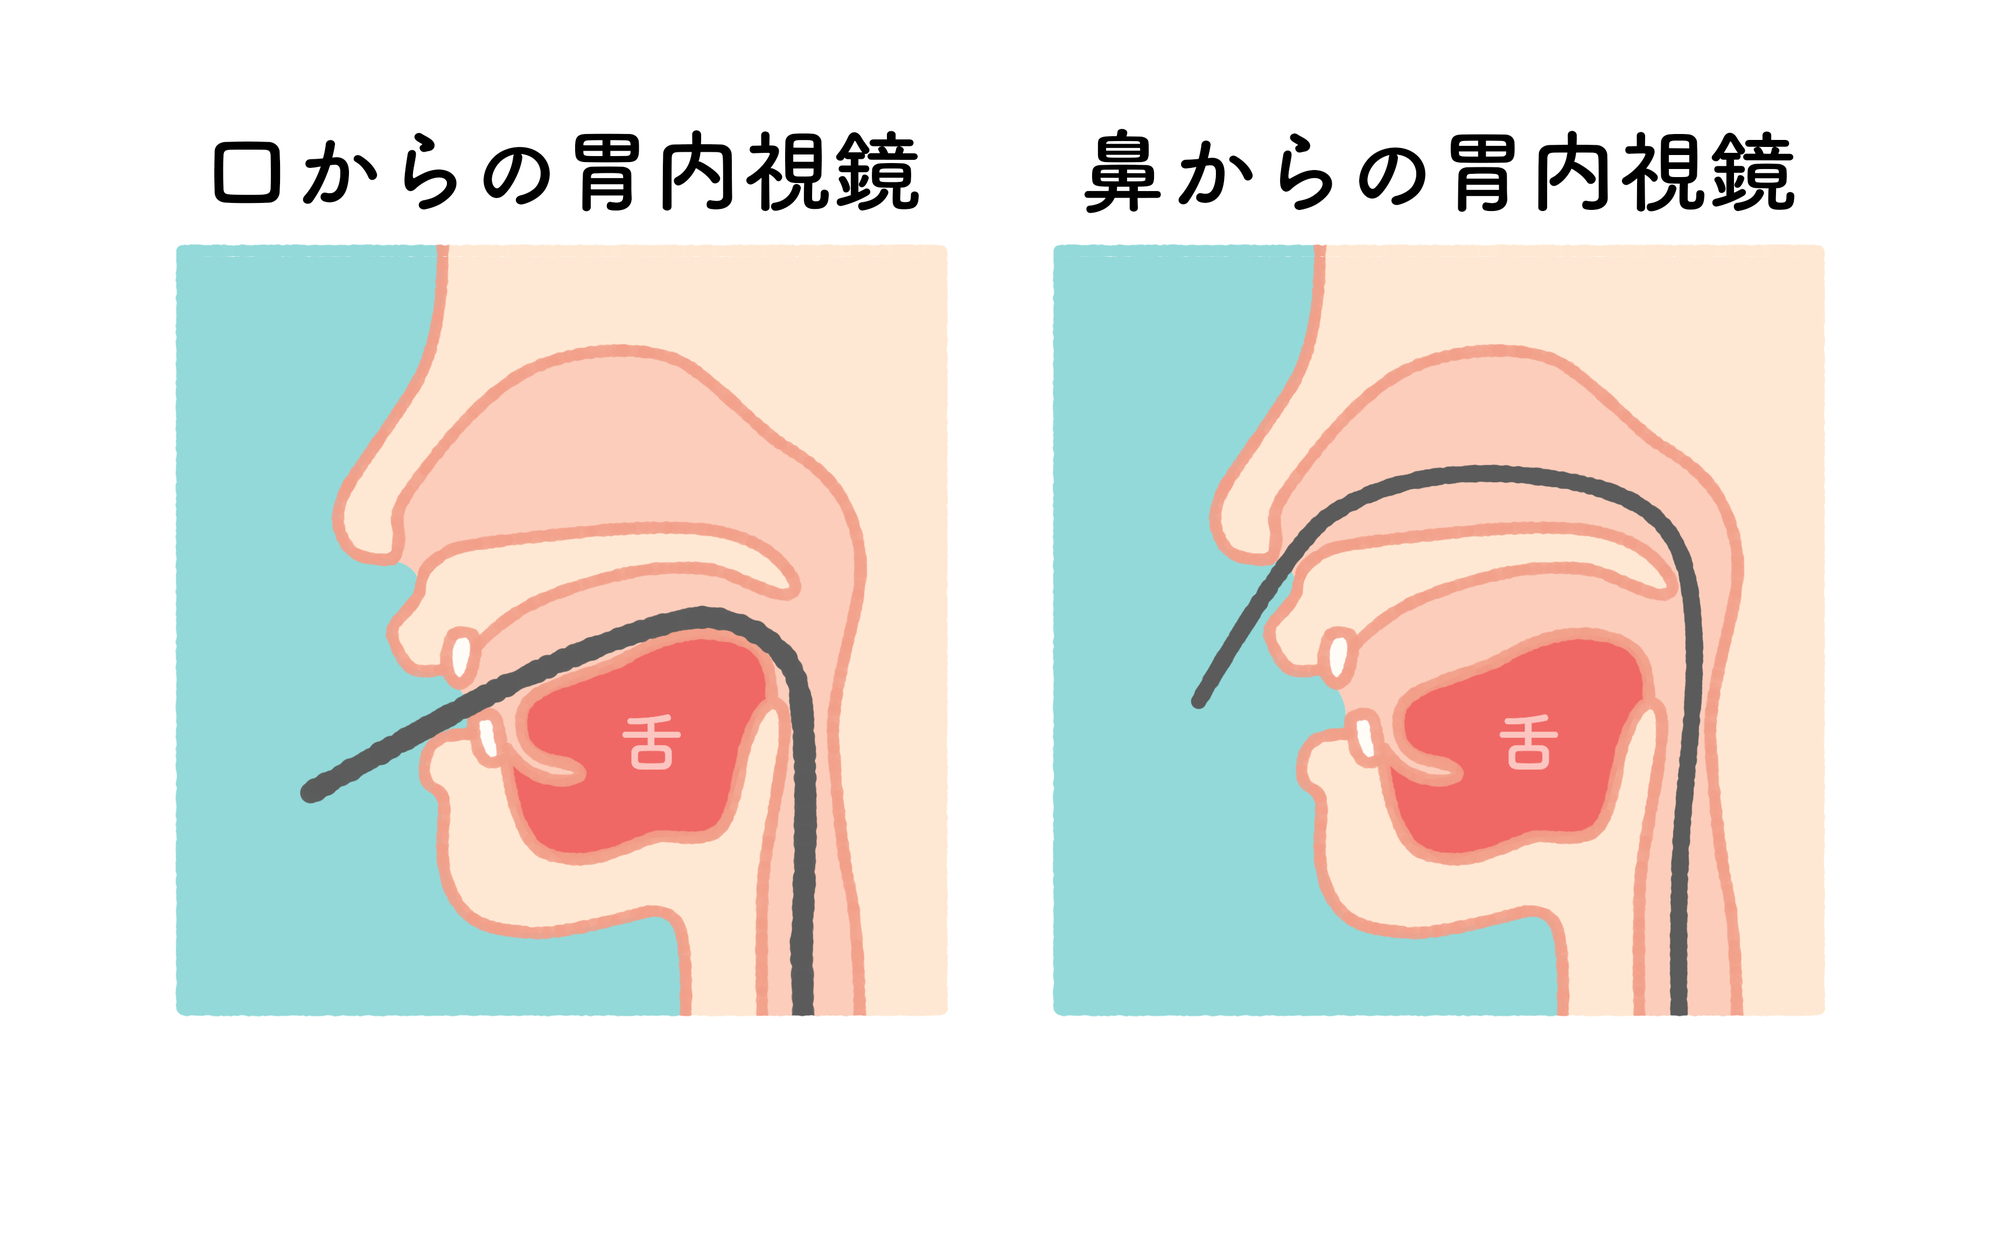 経口・経鼻内視鏡検査のどちらも選択可能な検査